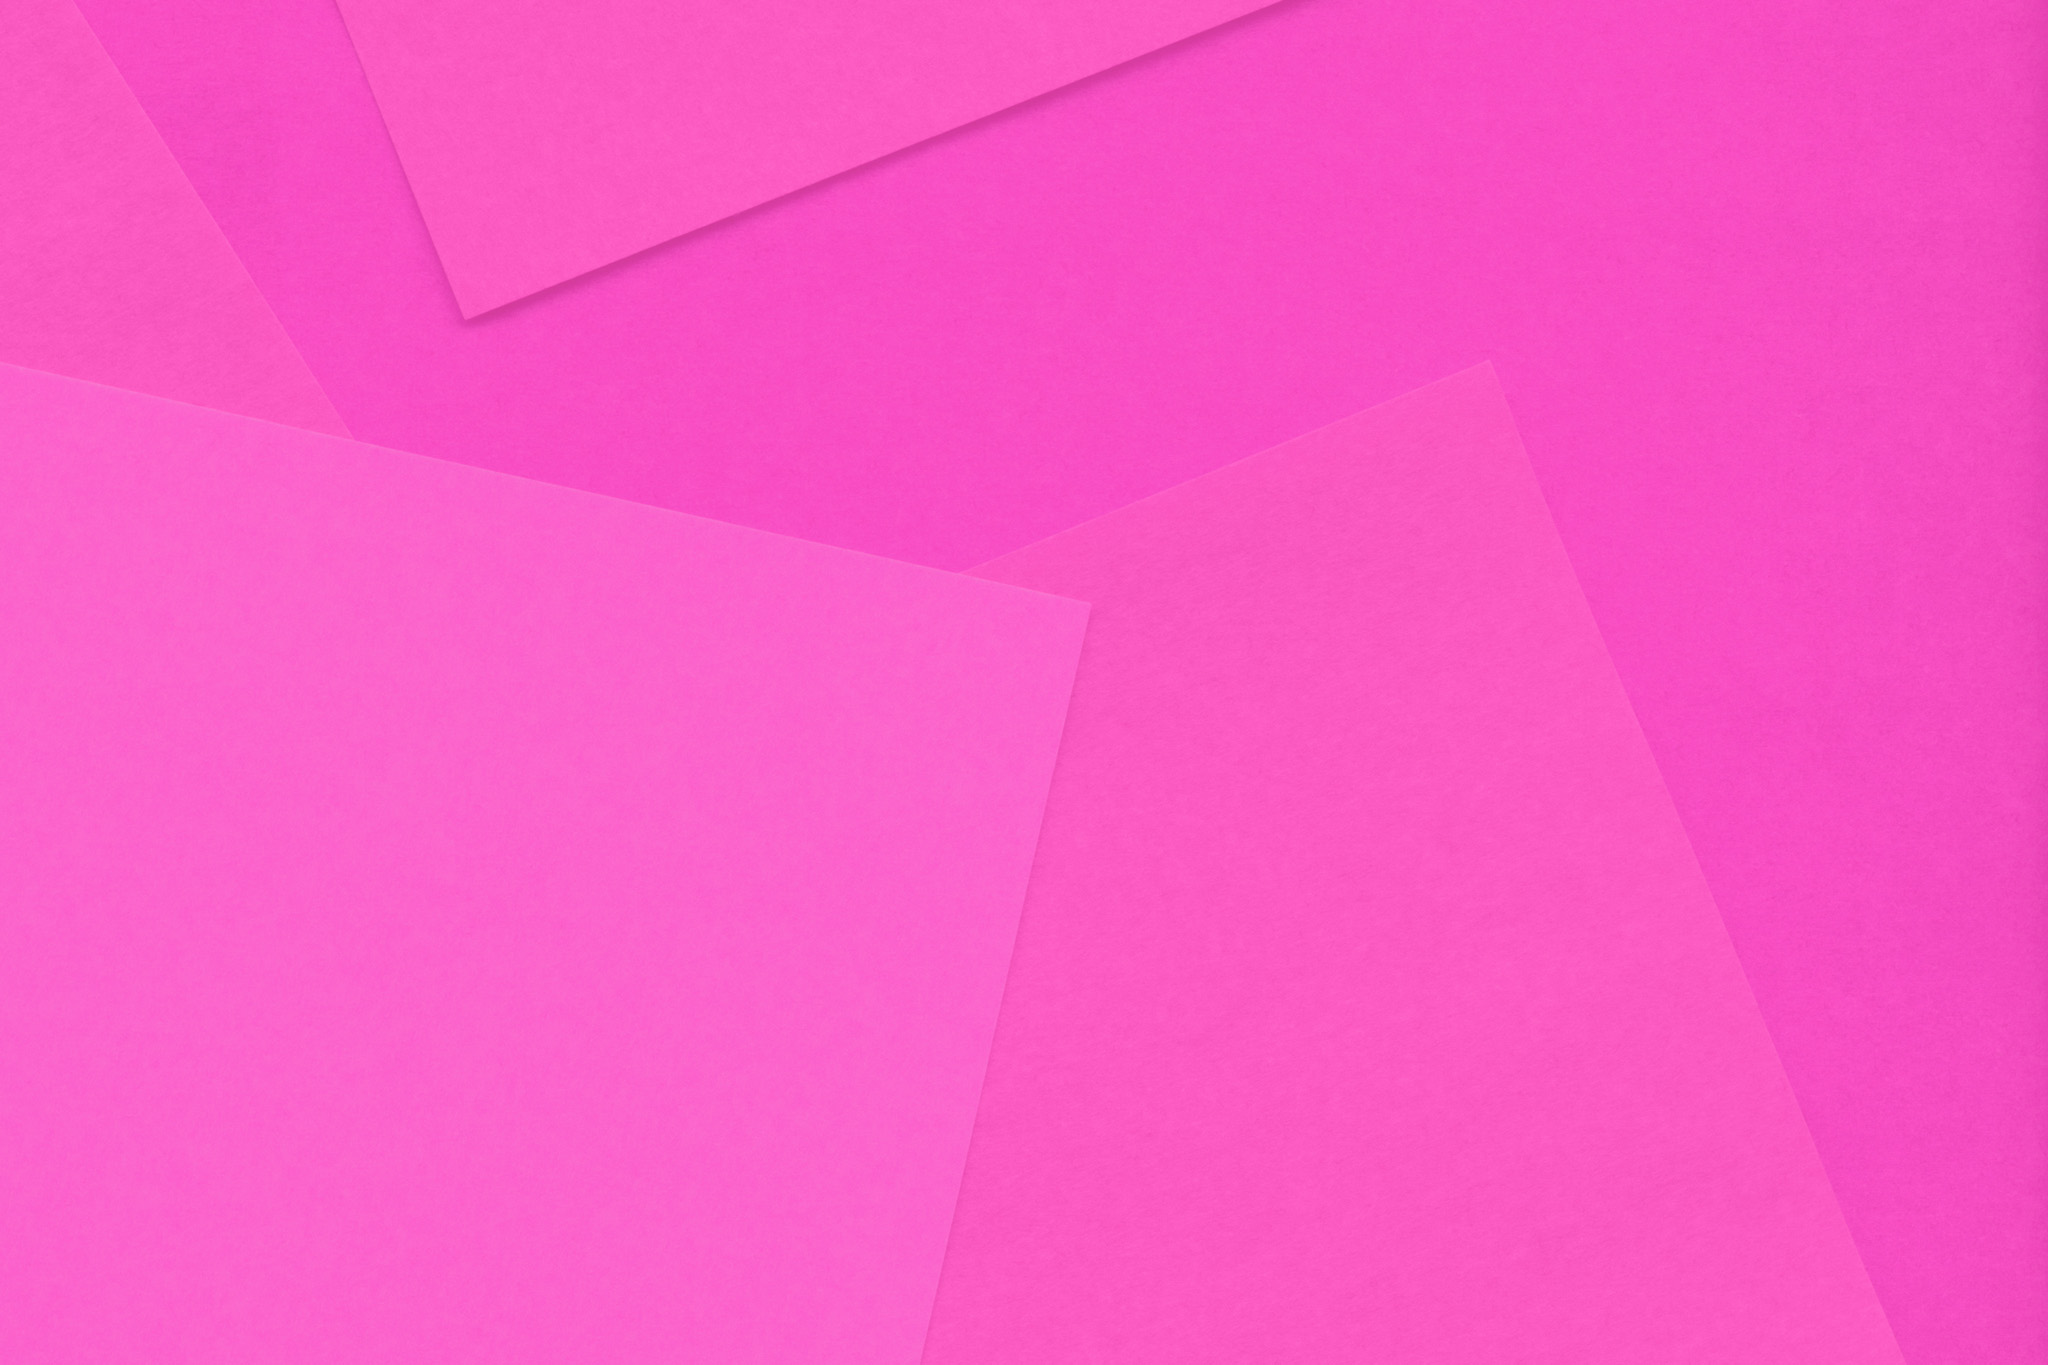 シンプルなピンクの無地壁紙 の画像素材を無料ダウンロード 1 背景フリー素材 Beiz Images